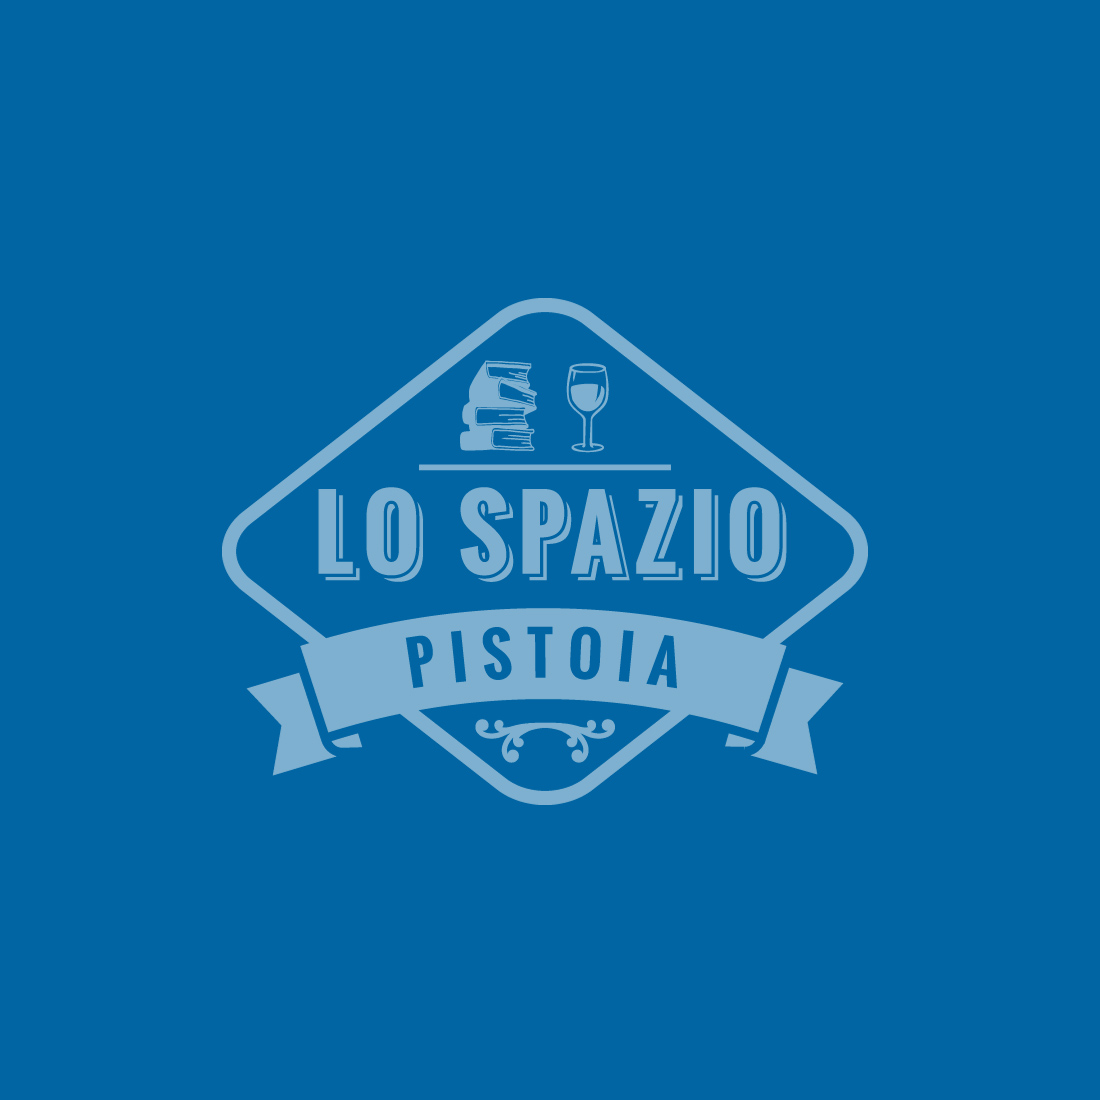 Corporate Identity Lo Spazio - Libreria, Wine bar